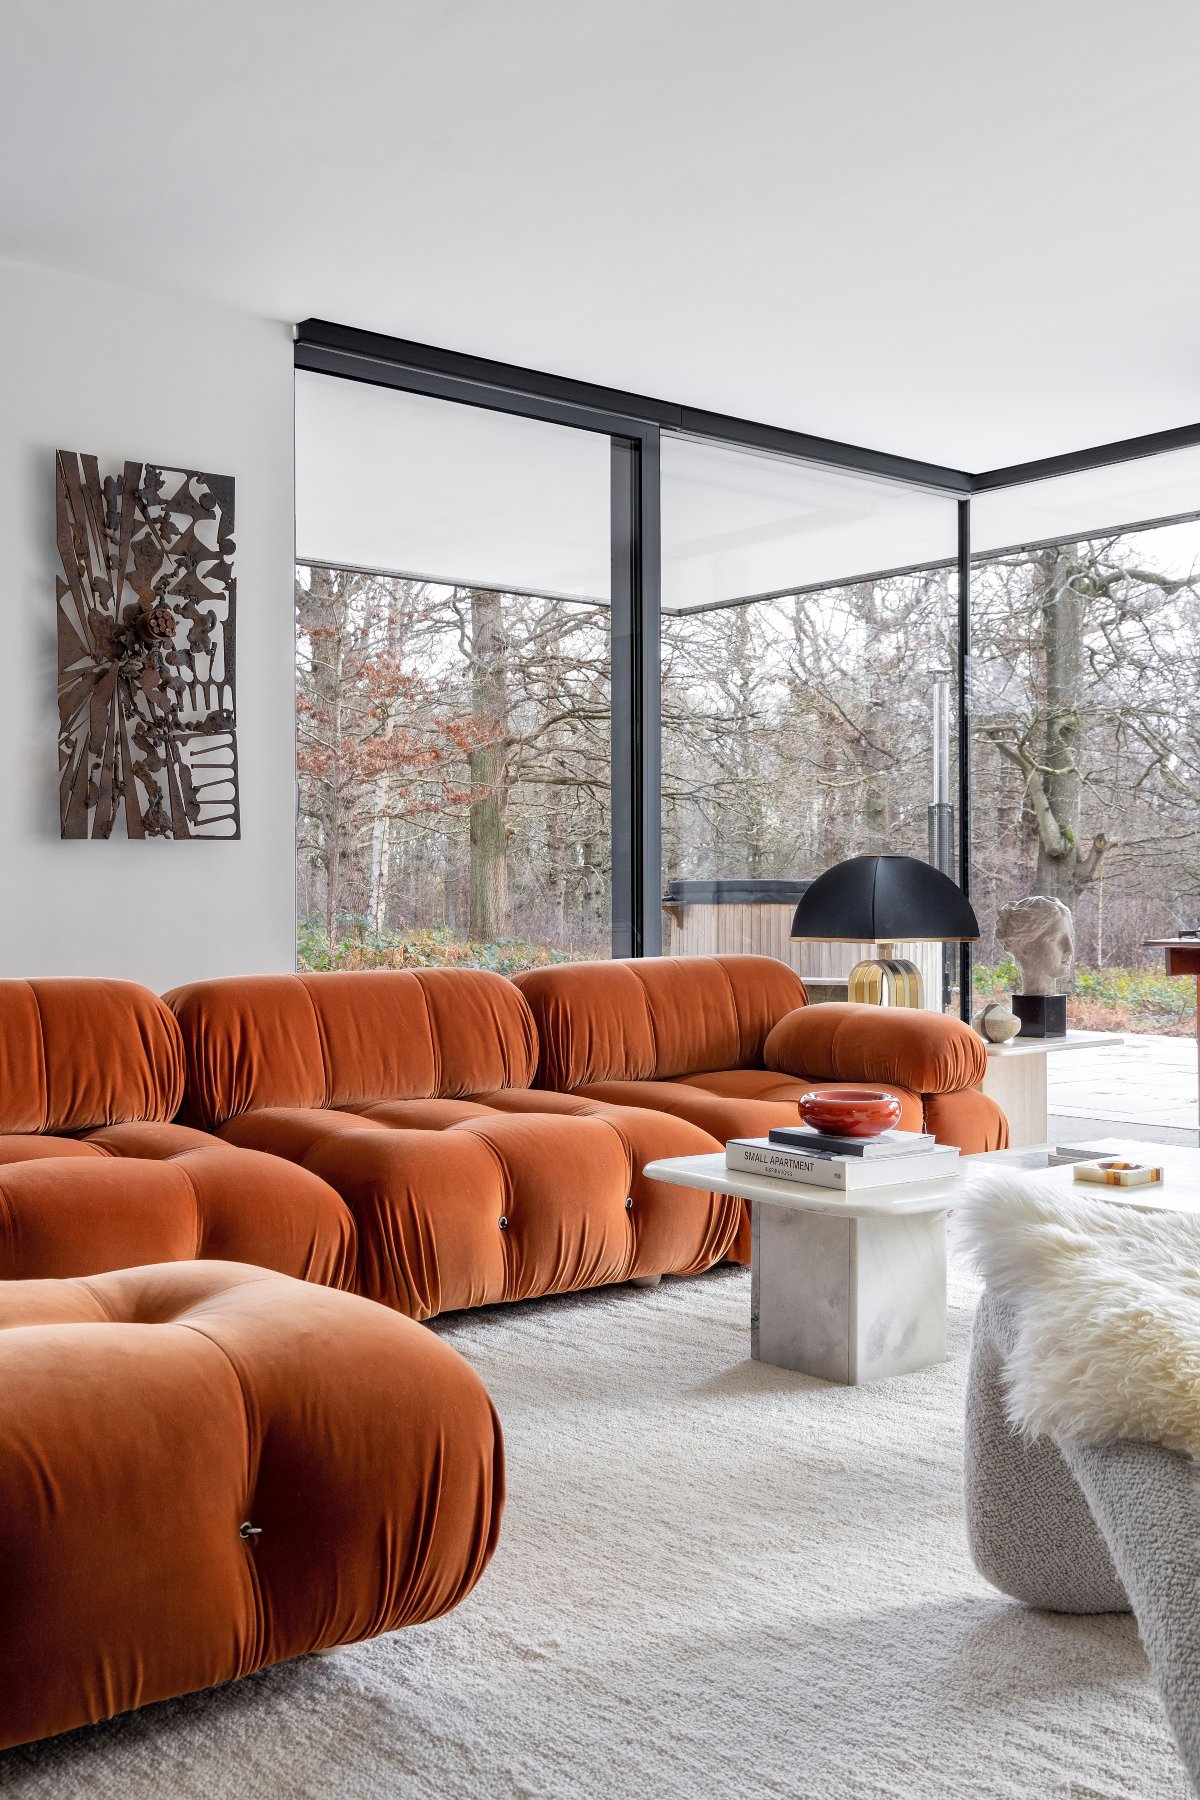 Salón moderno con gran sofá de color caldera con formas redondeadas